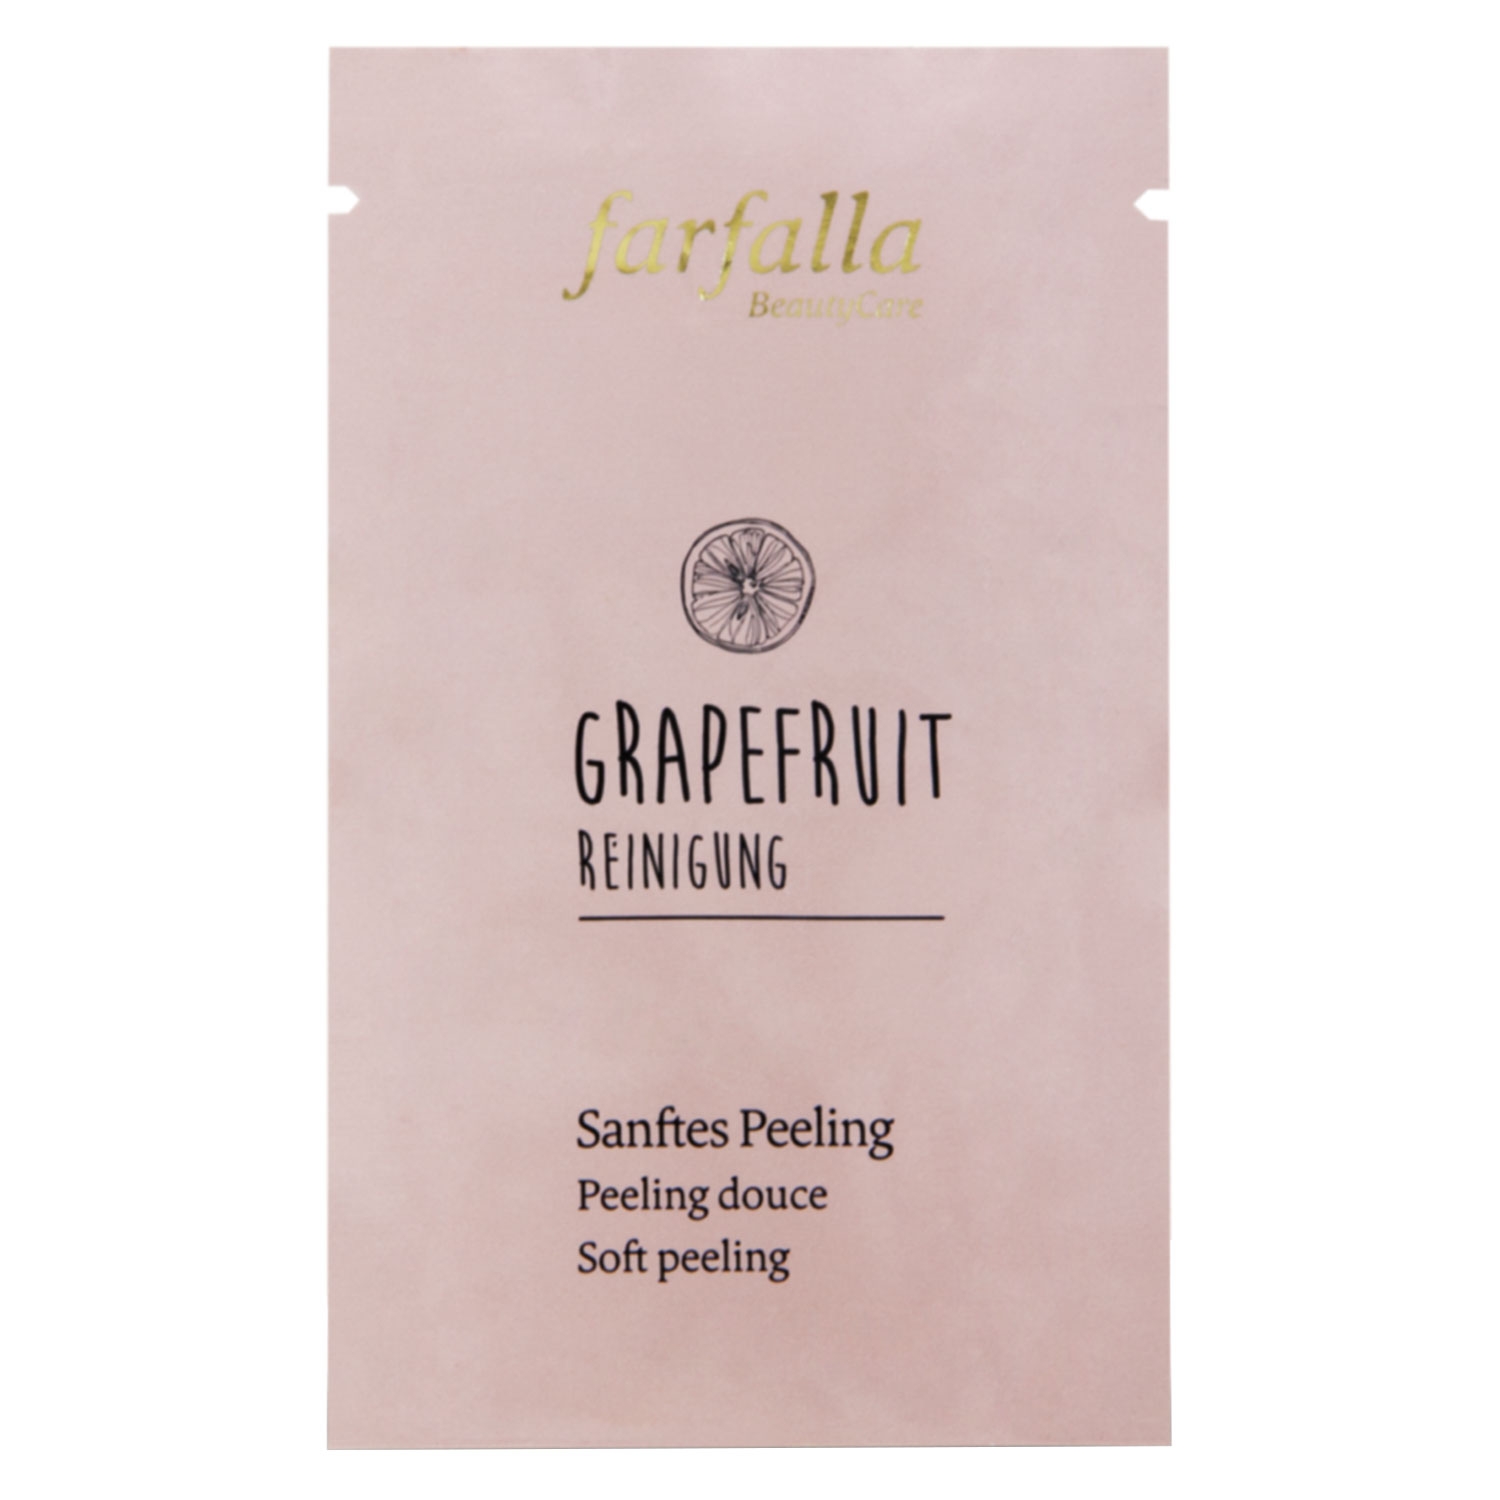 Produktbild von Grapefruit Reinigung - Sanftes Peeling